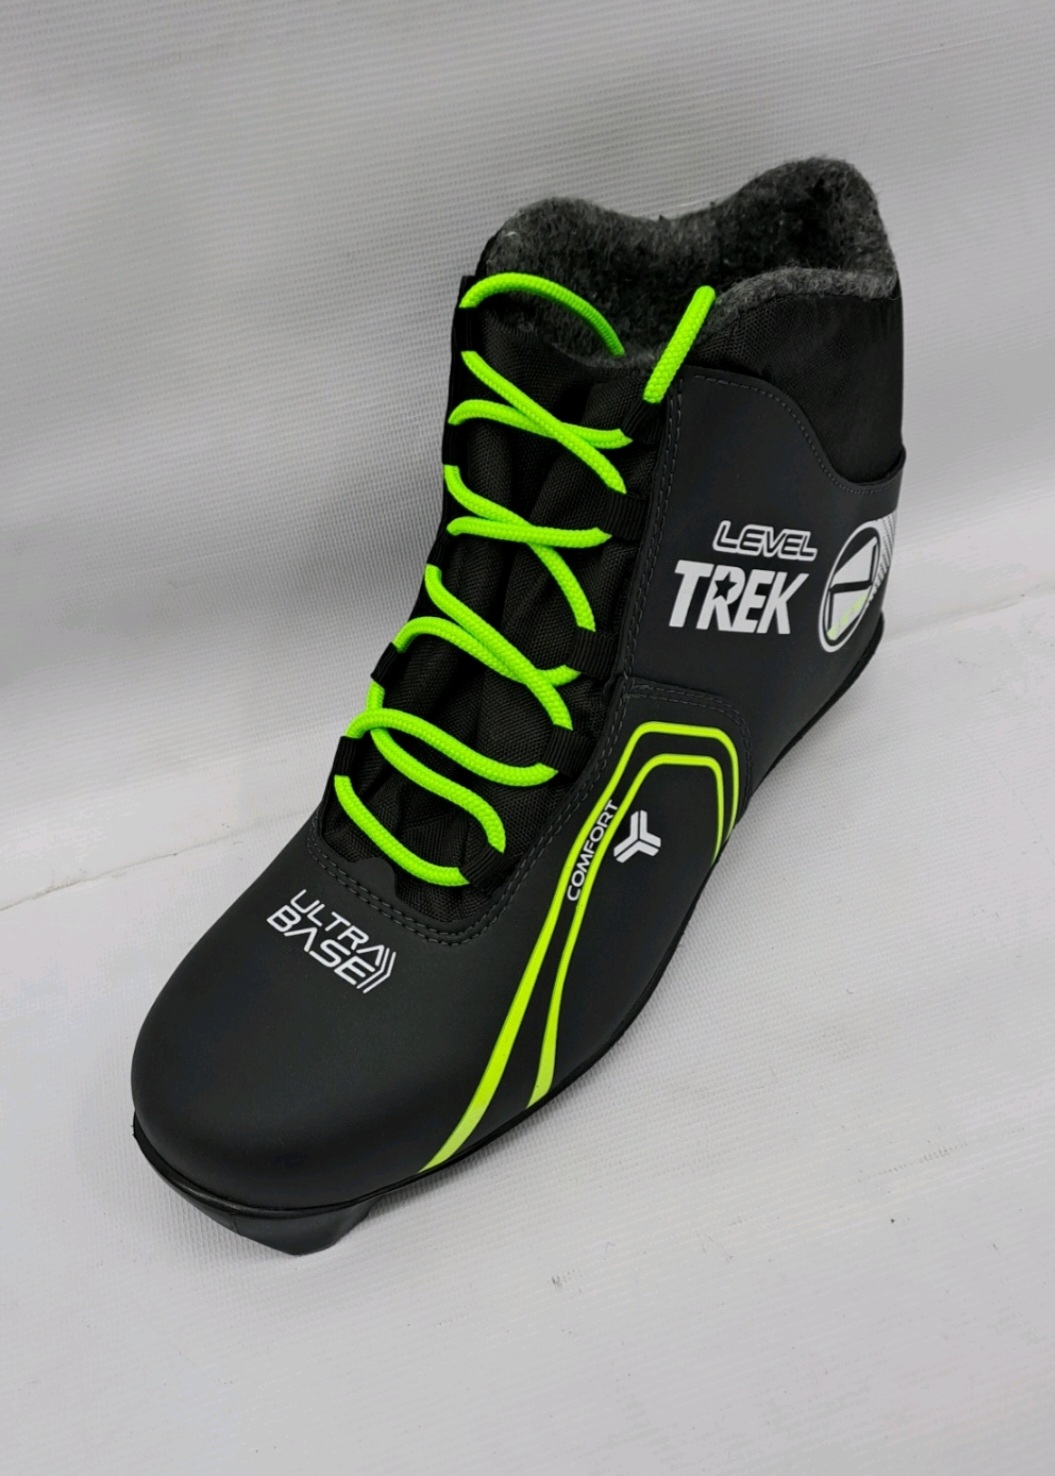 Ботинки лыжные TREK Level1 черный (лого неон) RU45